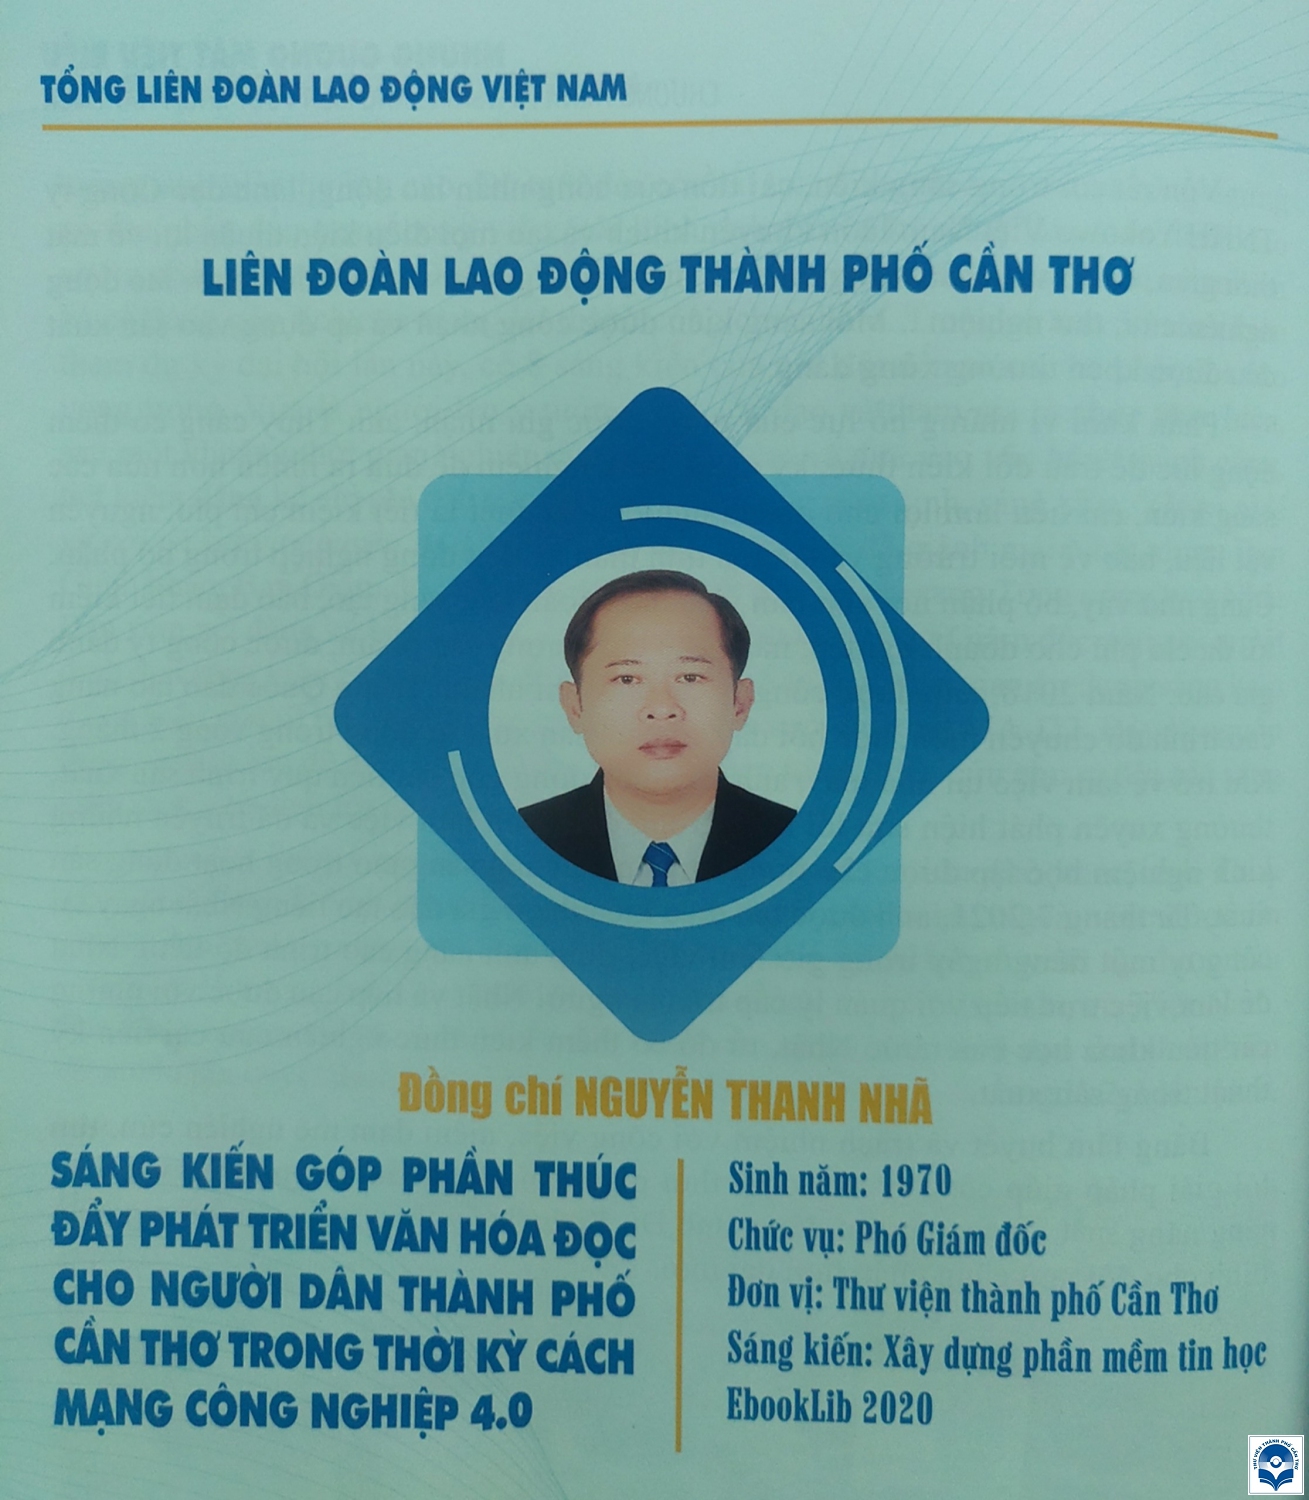 Anh Nguyễn Thanh Nhã với sáng kiến góp phần phát triển văn hóa đọc trong thời kỳ cách mạng công nghiệp 4.0